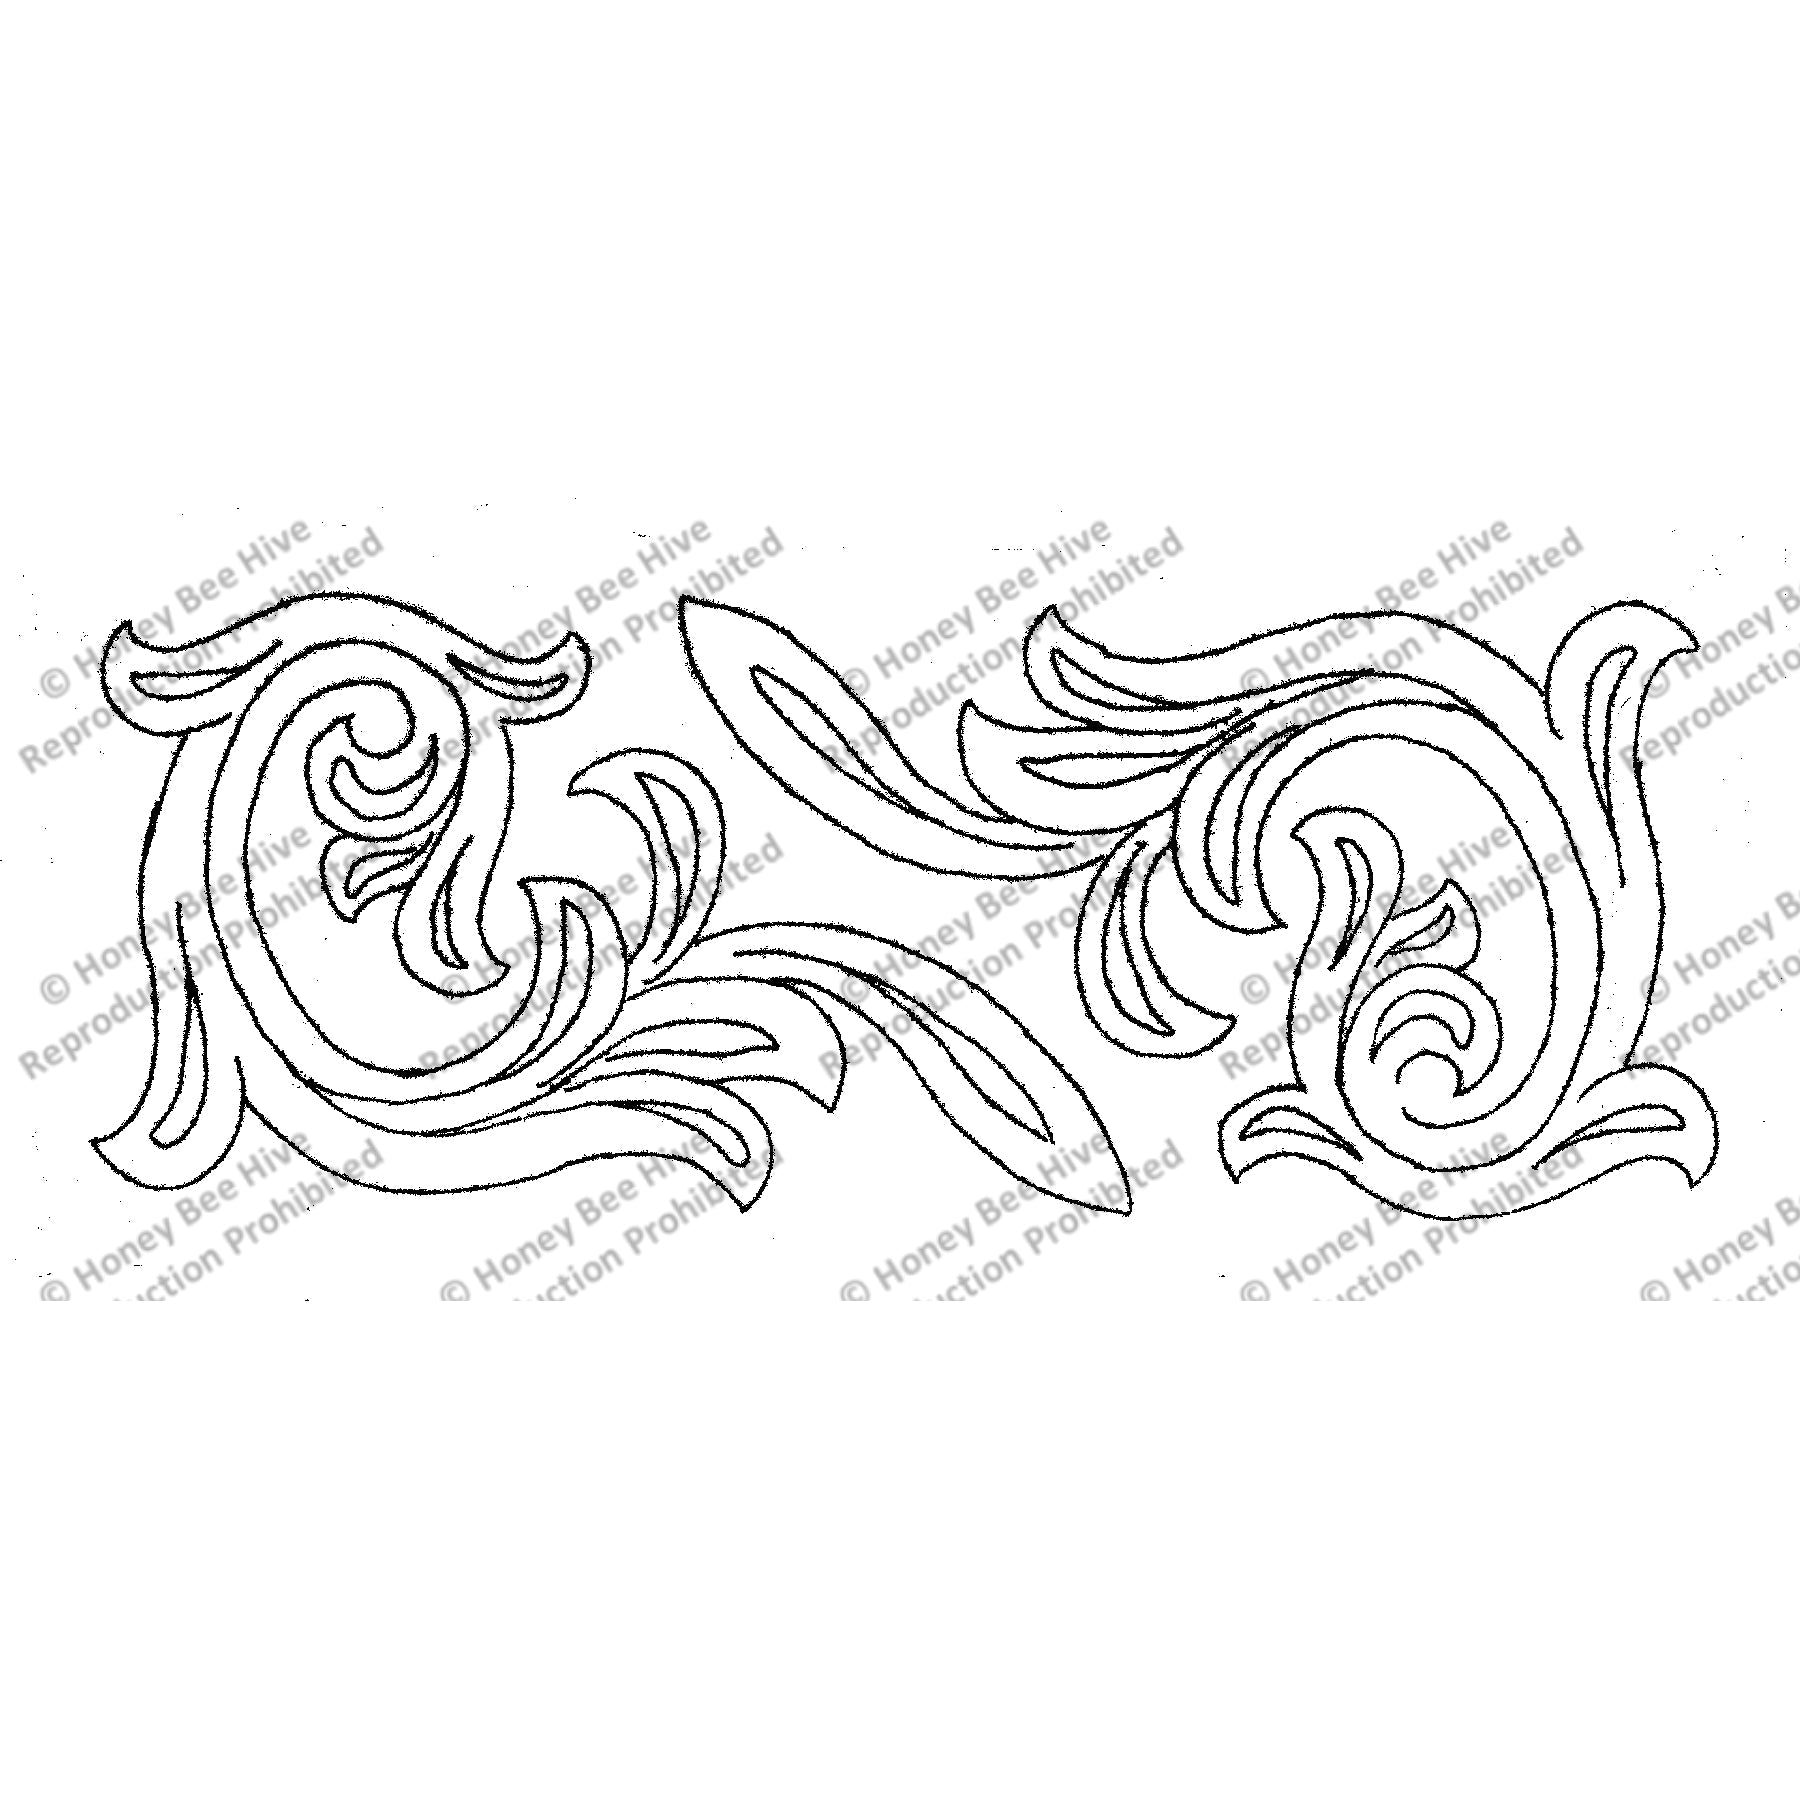 Rowe Scroll, rug hooking pattern